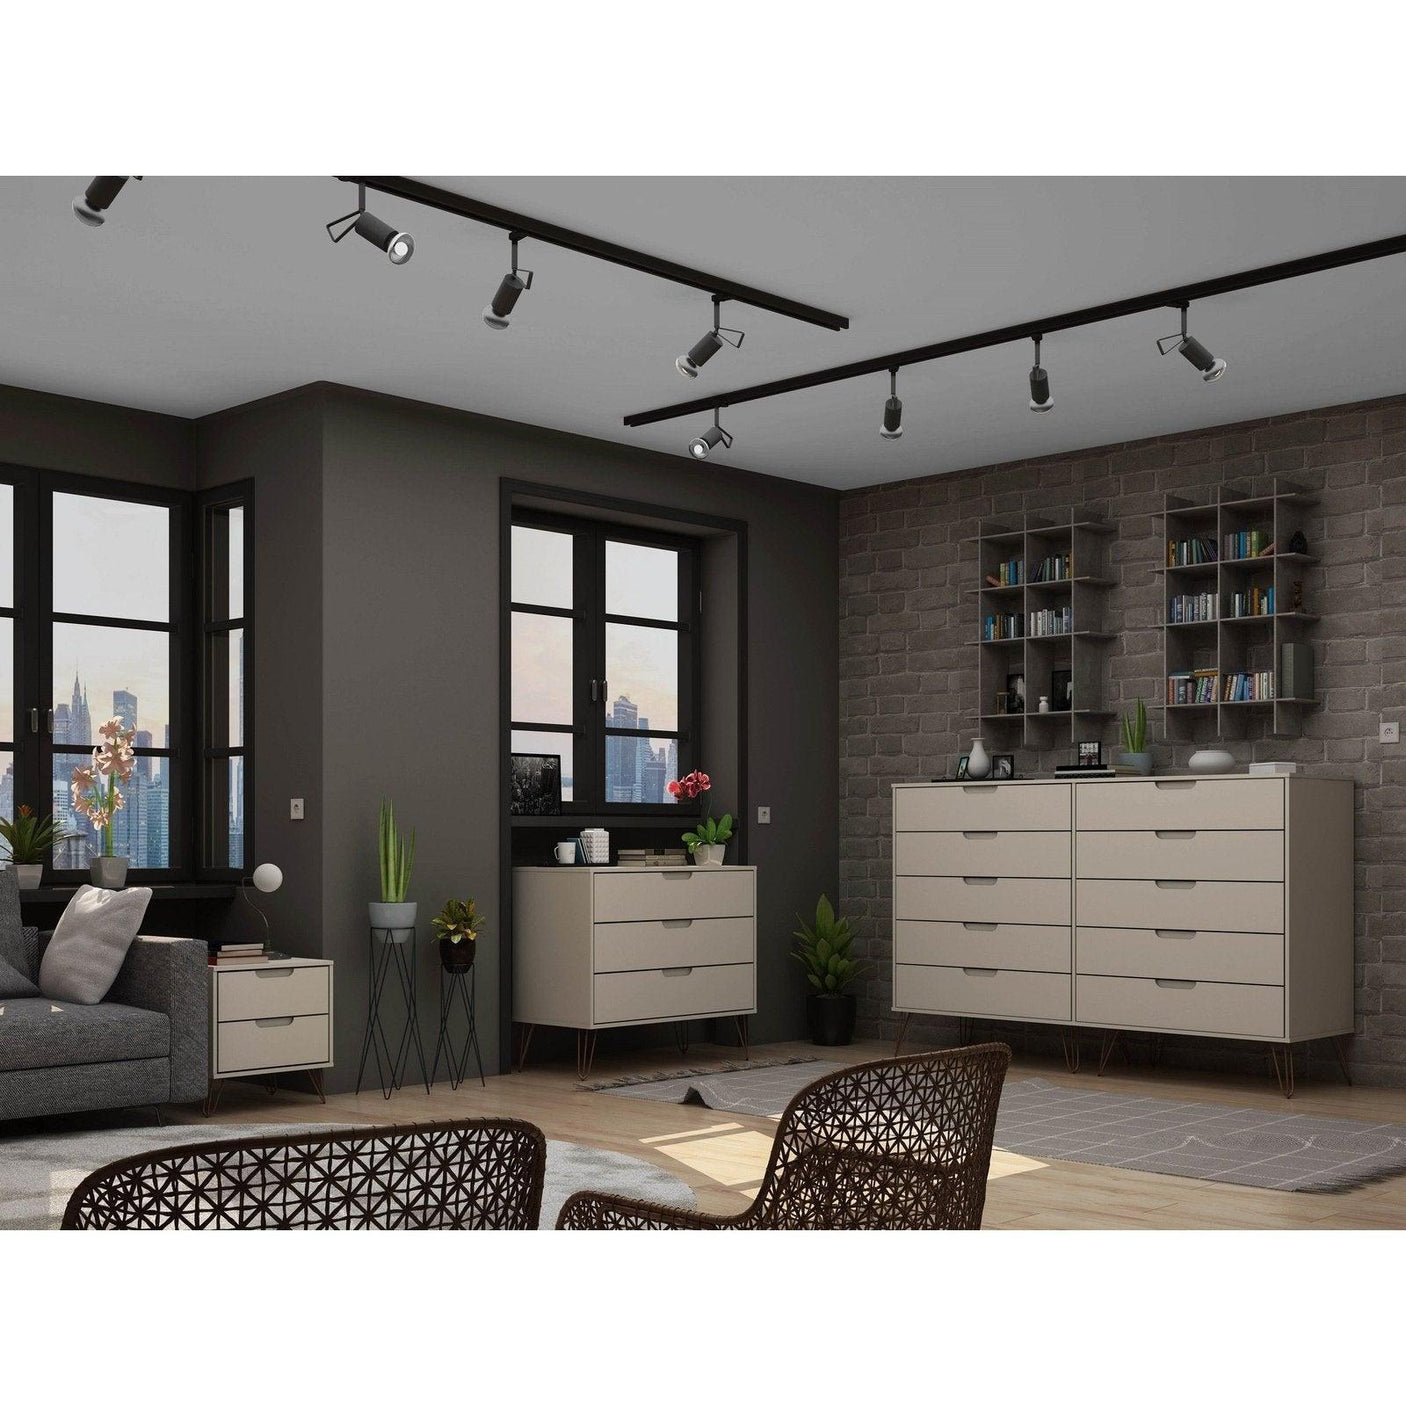 Manhattan Comfort Rockefeller 3-Piece Dresser and Nightstand Set - Bedroom Depot USA